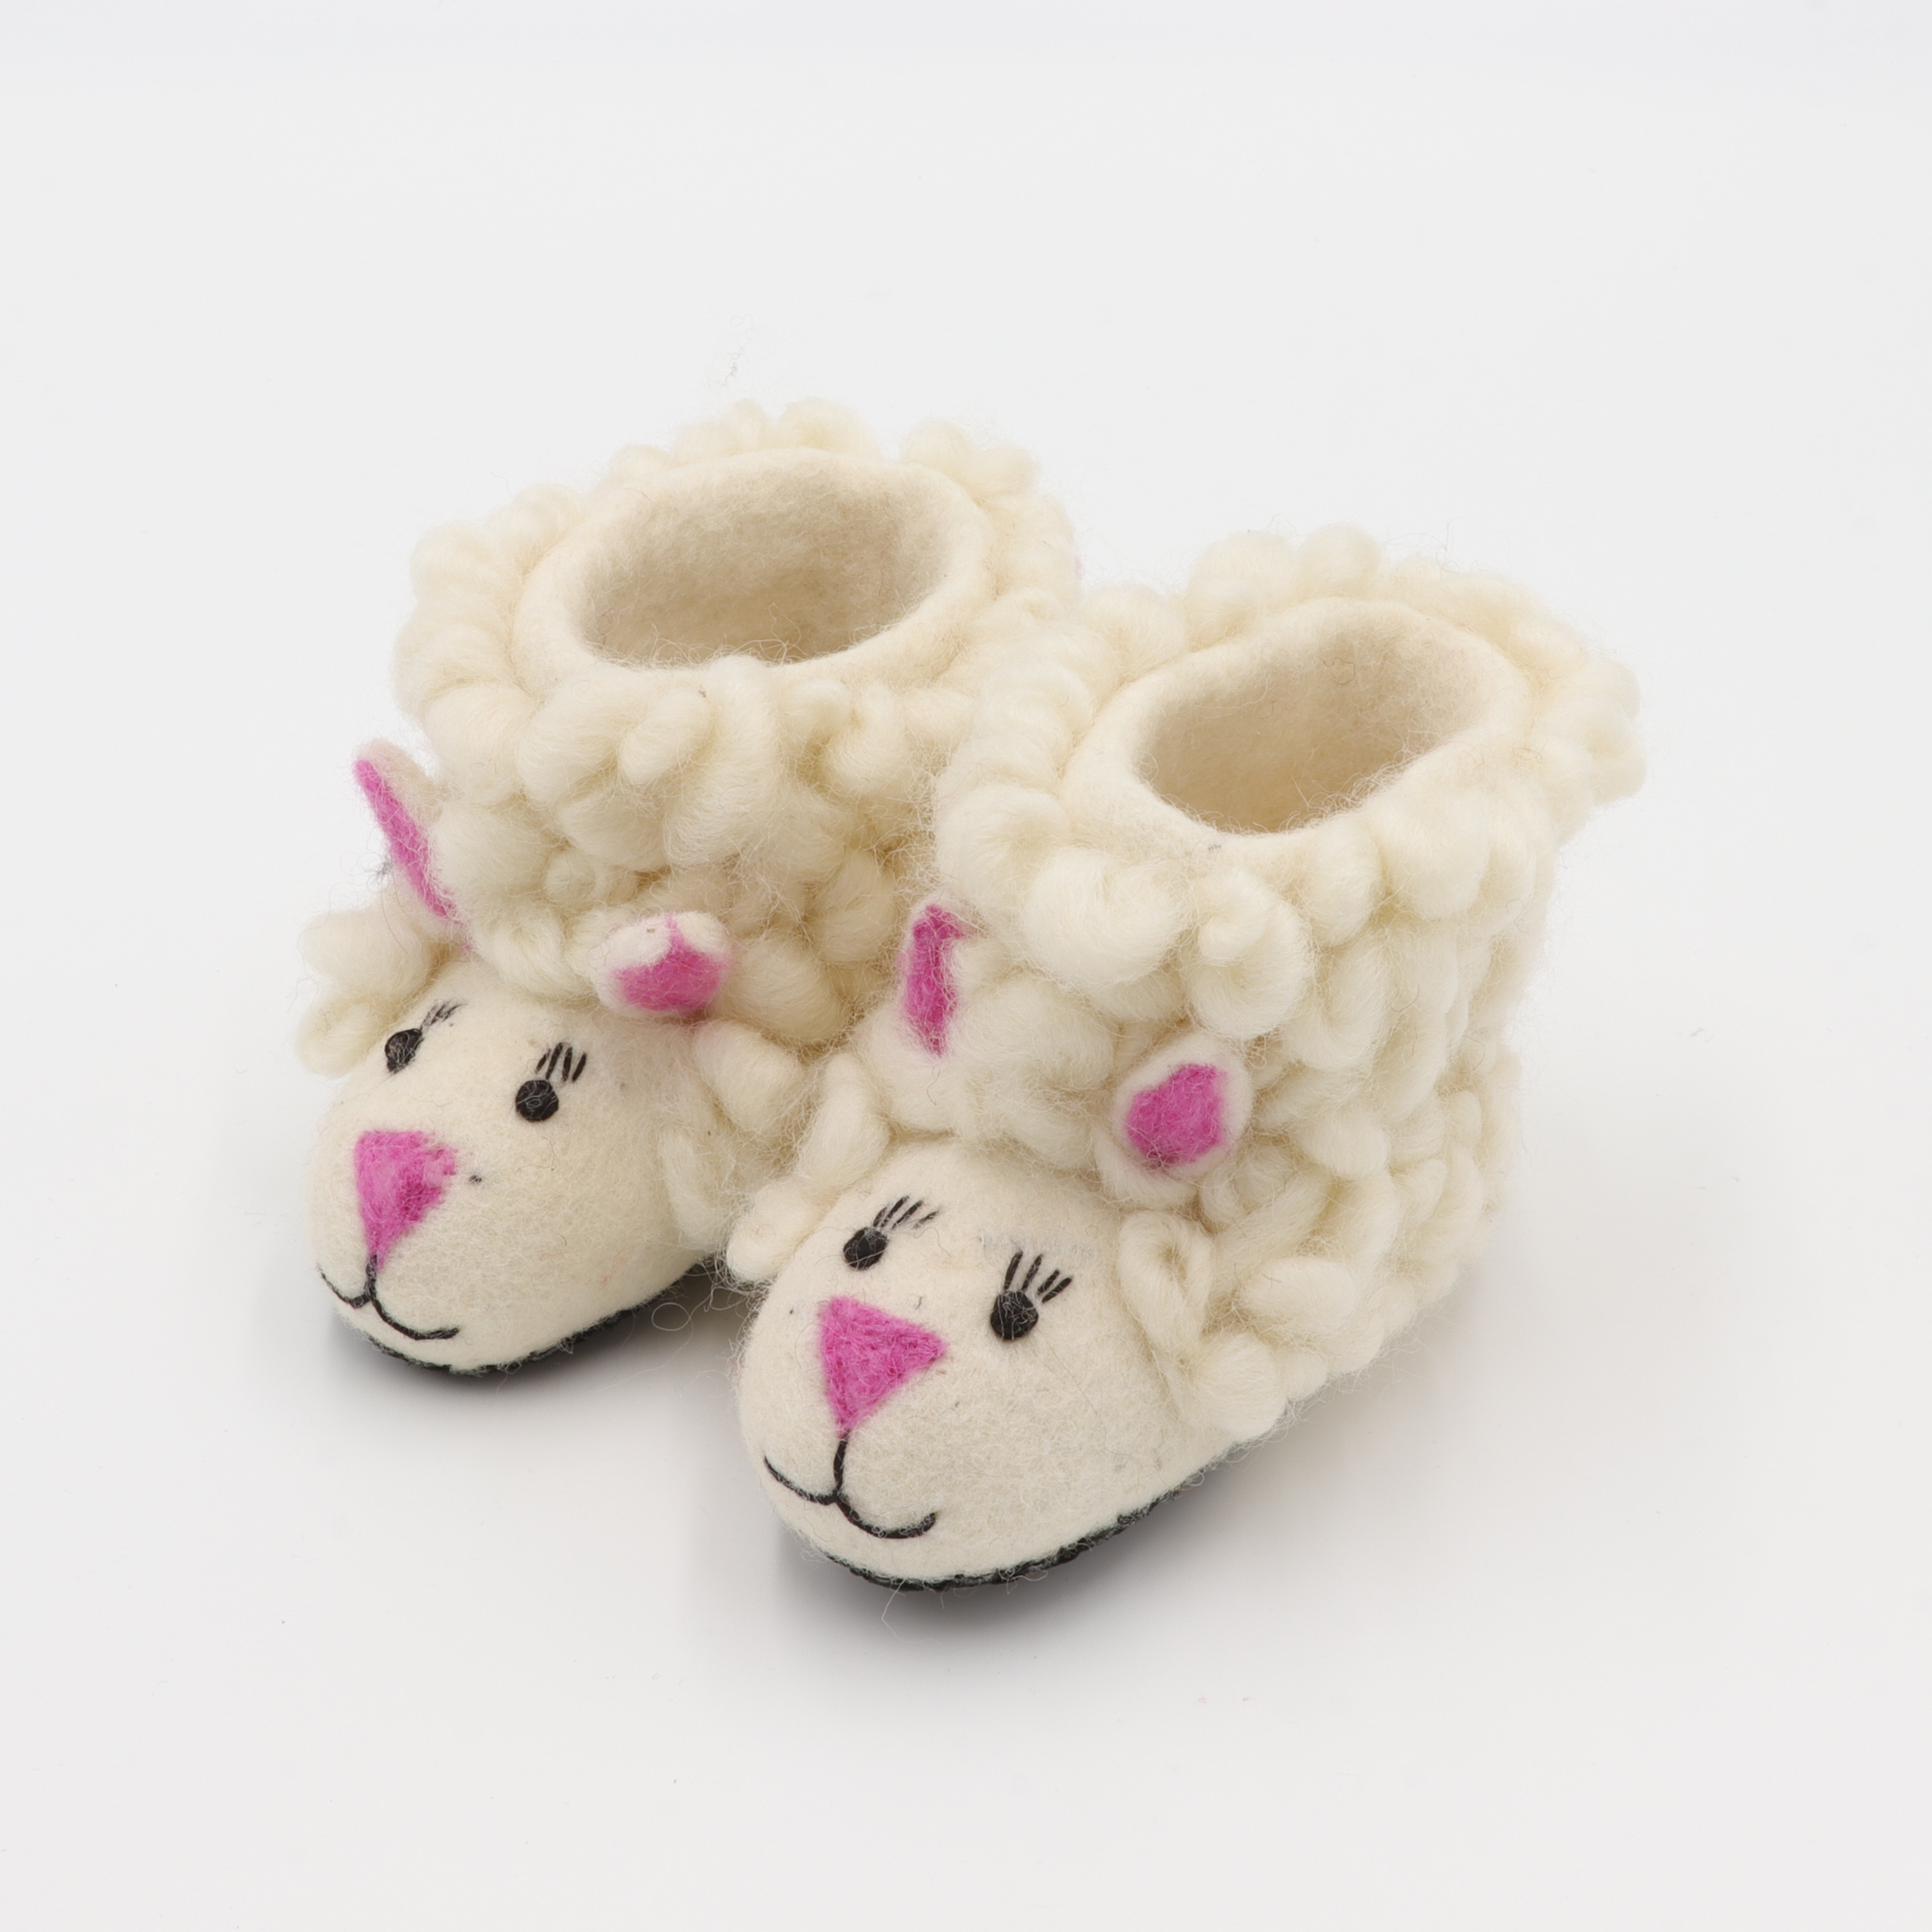 Schuhe aus Filz für Kinder - Das Weiße Schaf - rutschfeste Sohle aus Wildleder